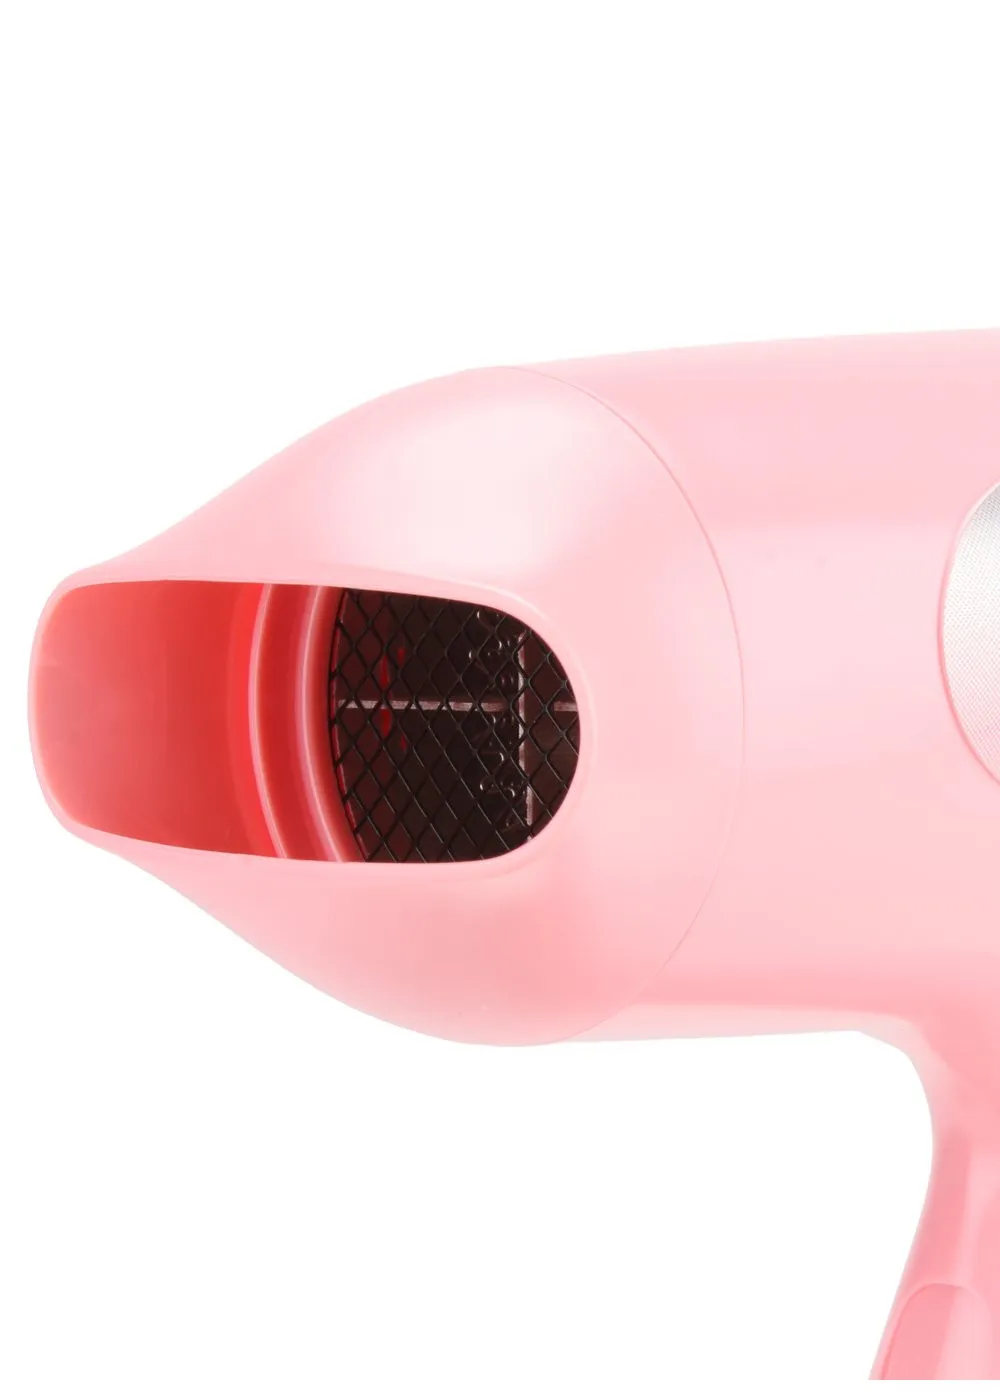 Фен Panasonic EH-ND12 охлаждением воздуха и режимом Turbo Dry(Розовый)#4